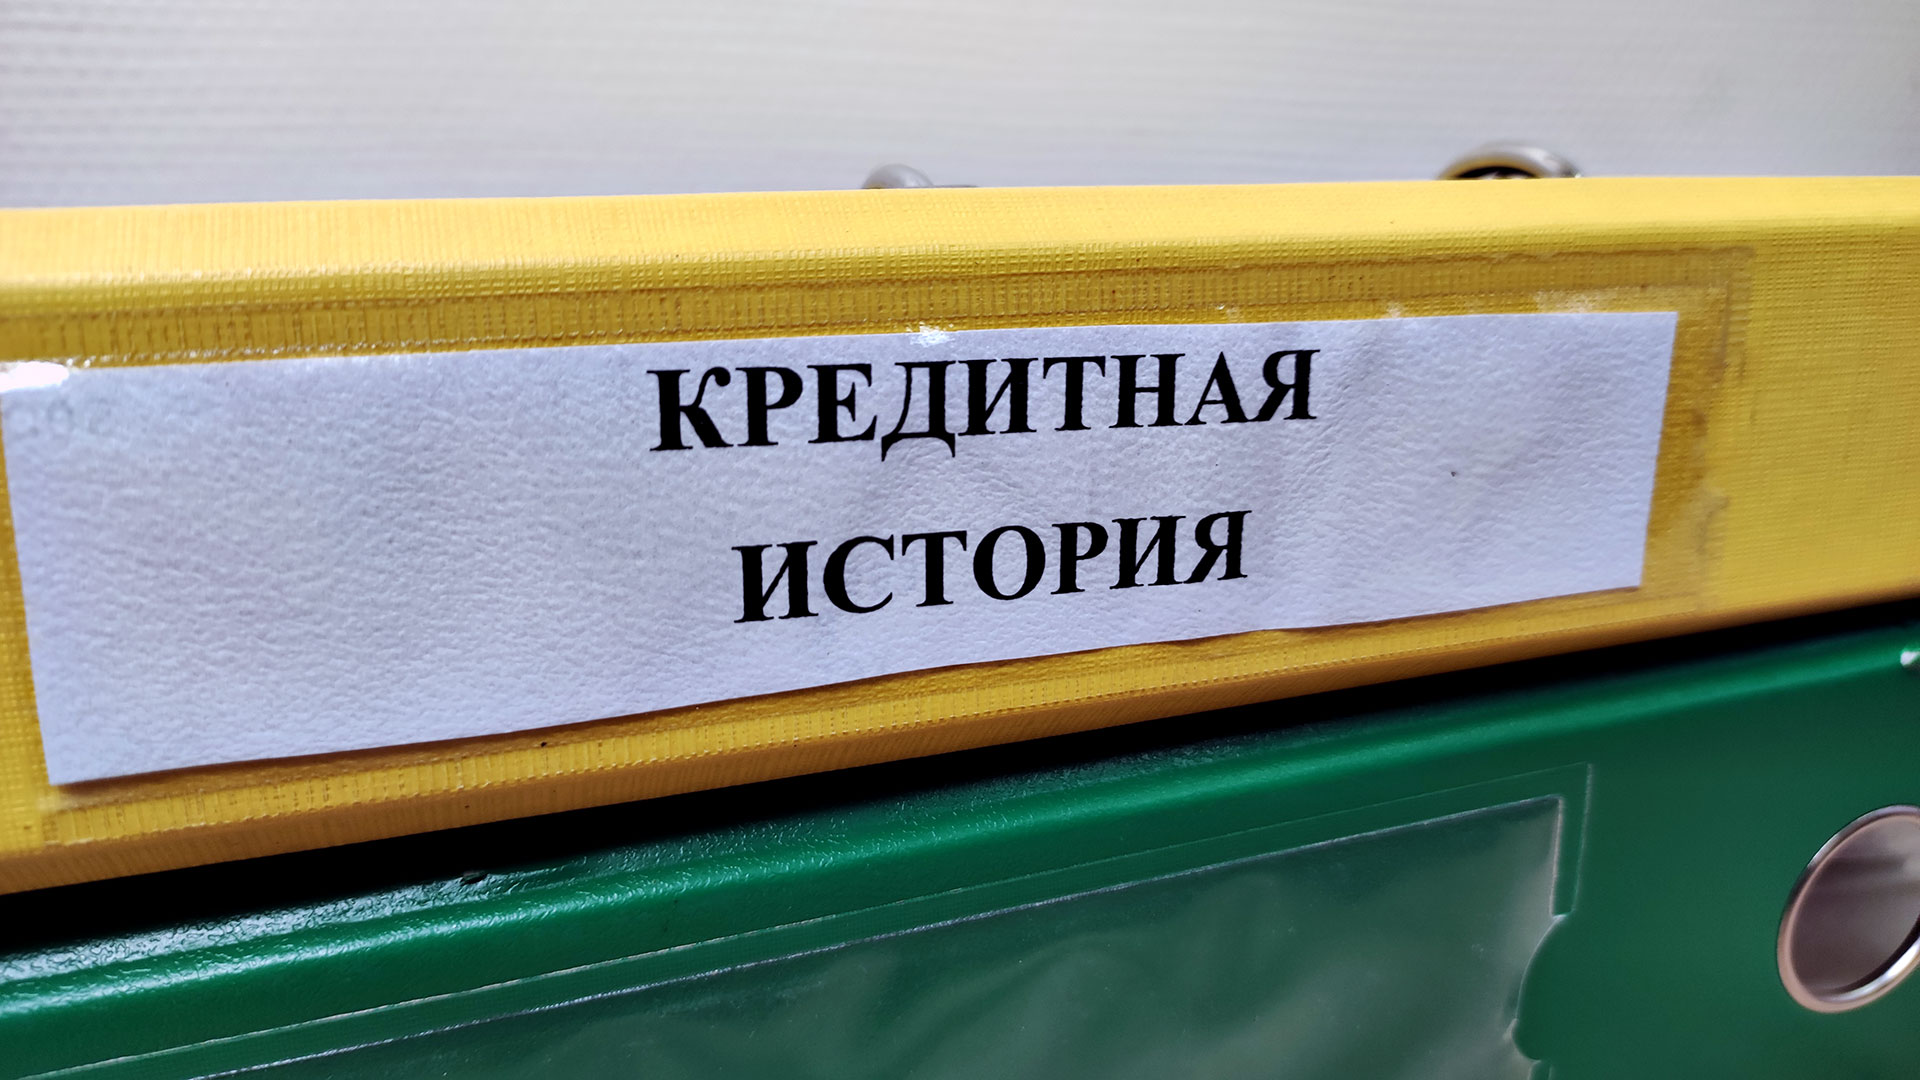 Просрочки не стереть, но улучшить кредитную историю можно ✓ Новости Рыбинска и не только